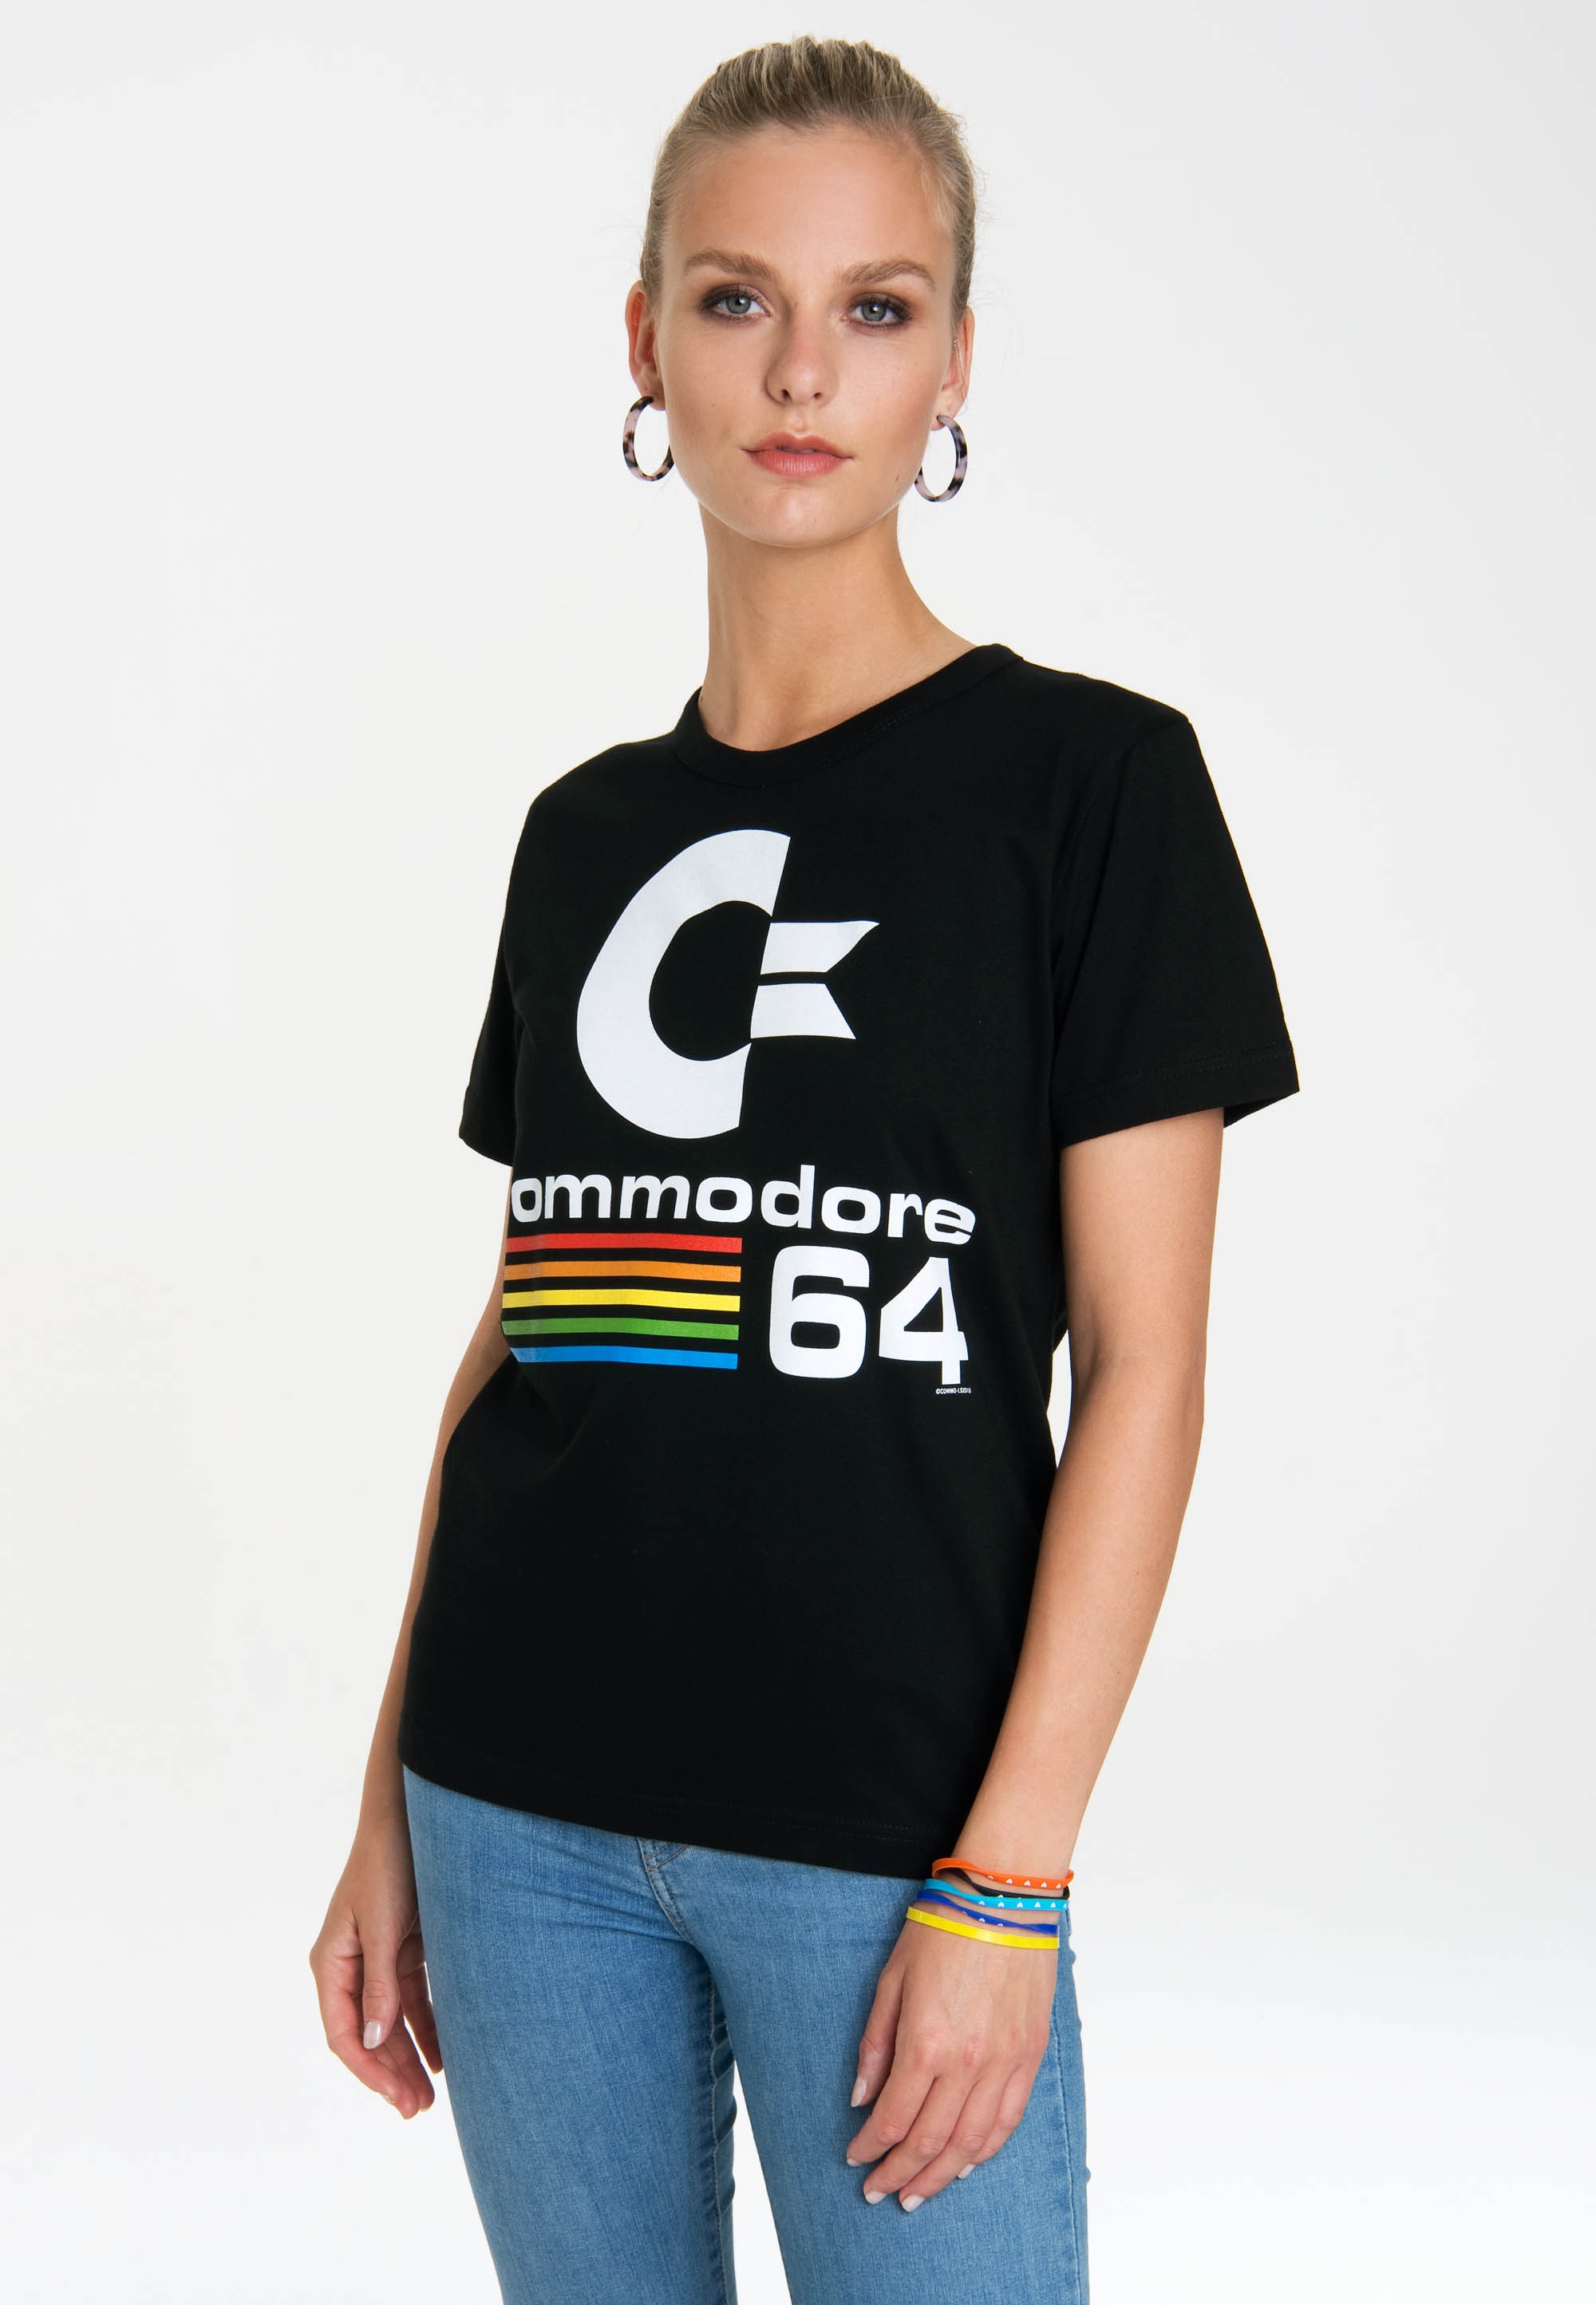 LOGOSHIRT T-Shirt "Commodore C64", mit lizenziertem Originaldesign günstig online kaufen